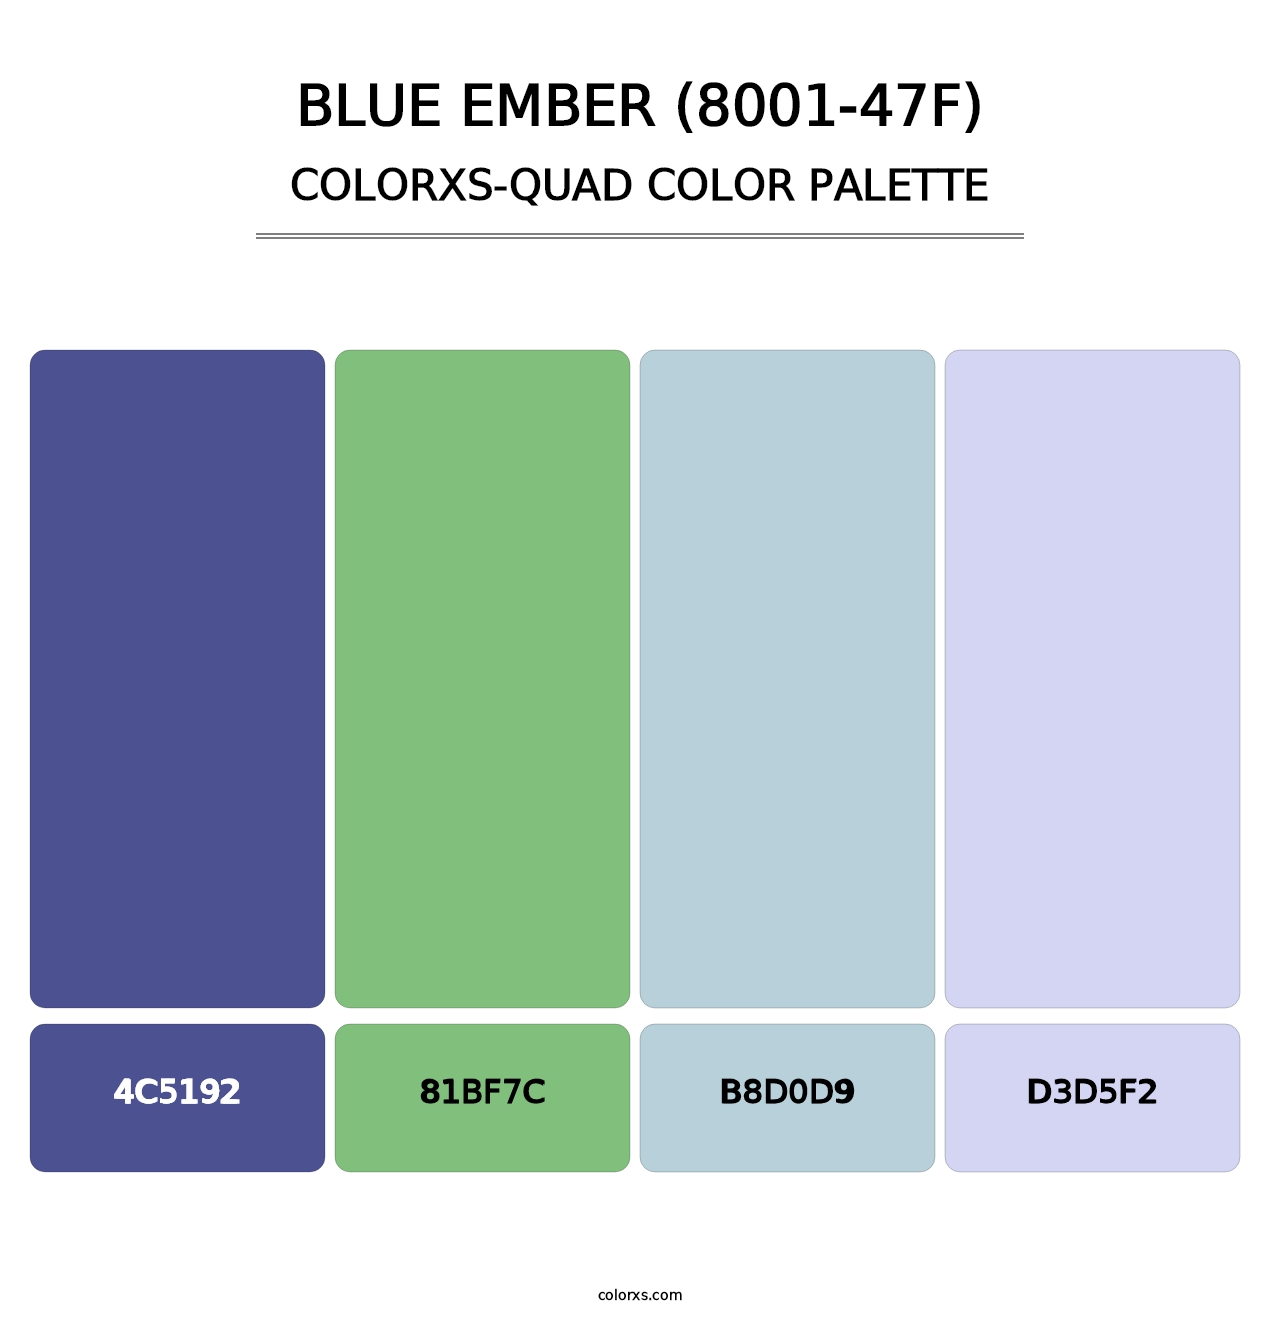 Blue Ember (8001-47F) - Colorxs Quad Palette